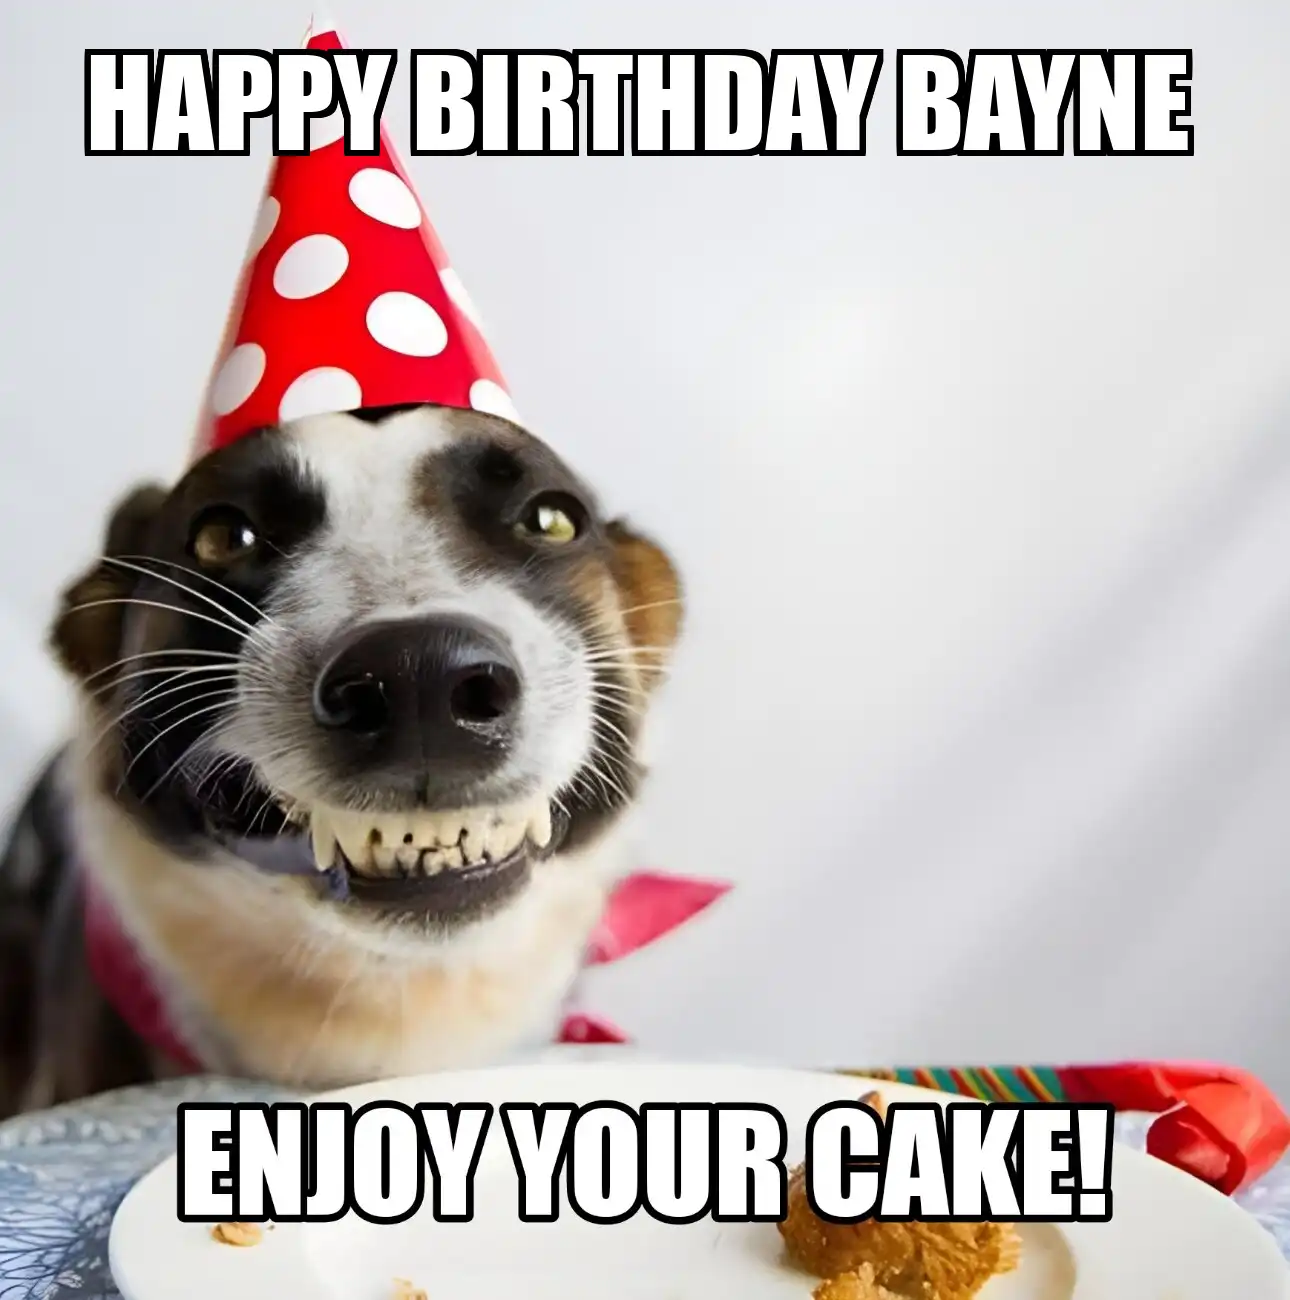 Happy Birthday Bayne Enjoy Your Cake Dog Meme